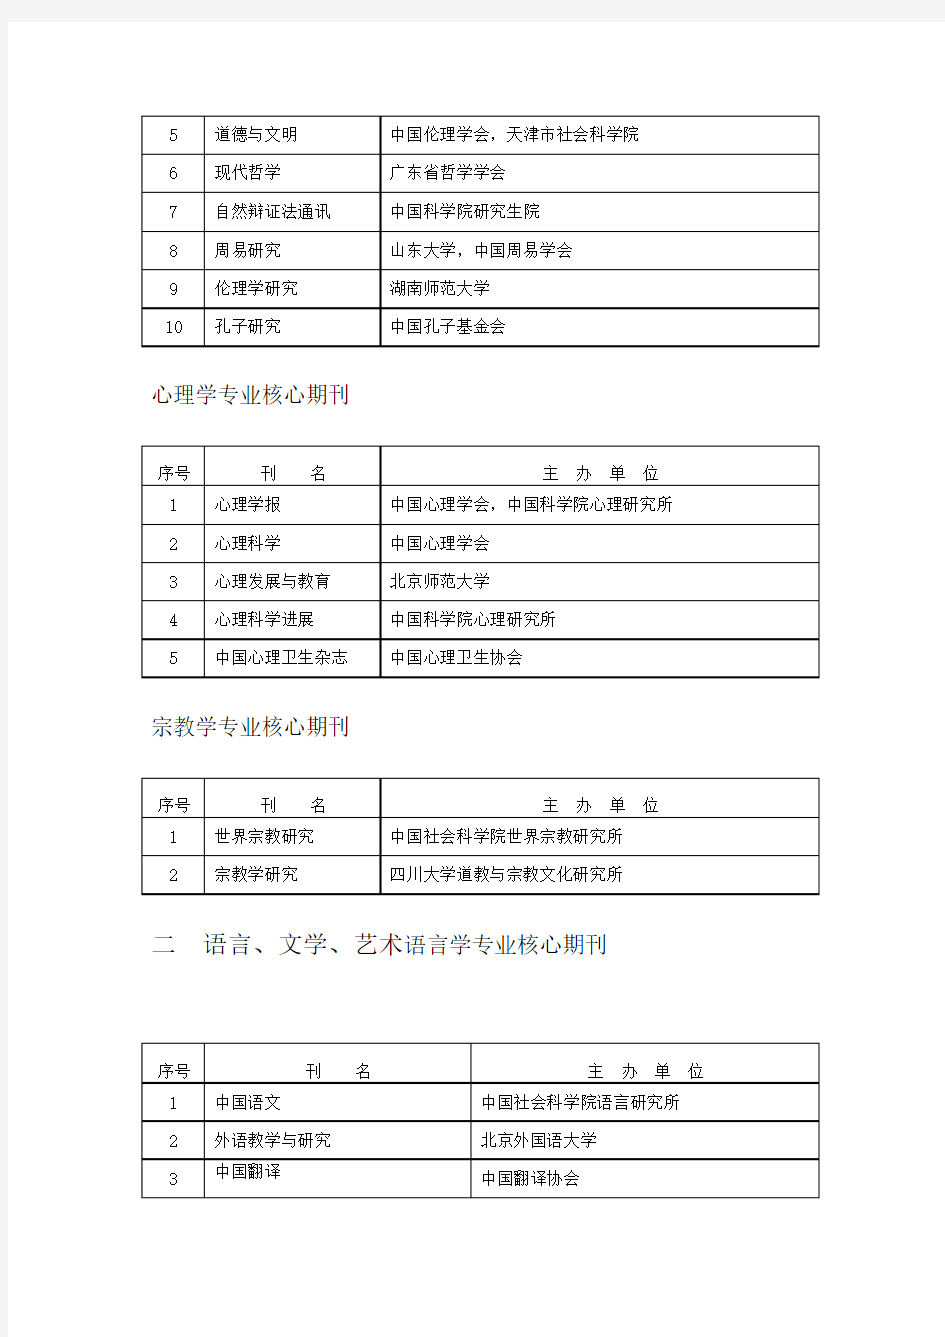 中国人文社会科学核心期刊要览(2008年版)